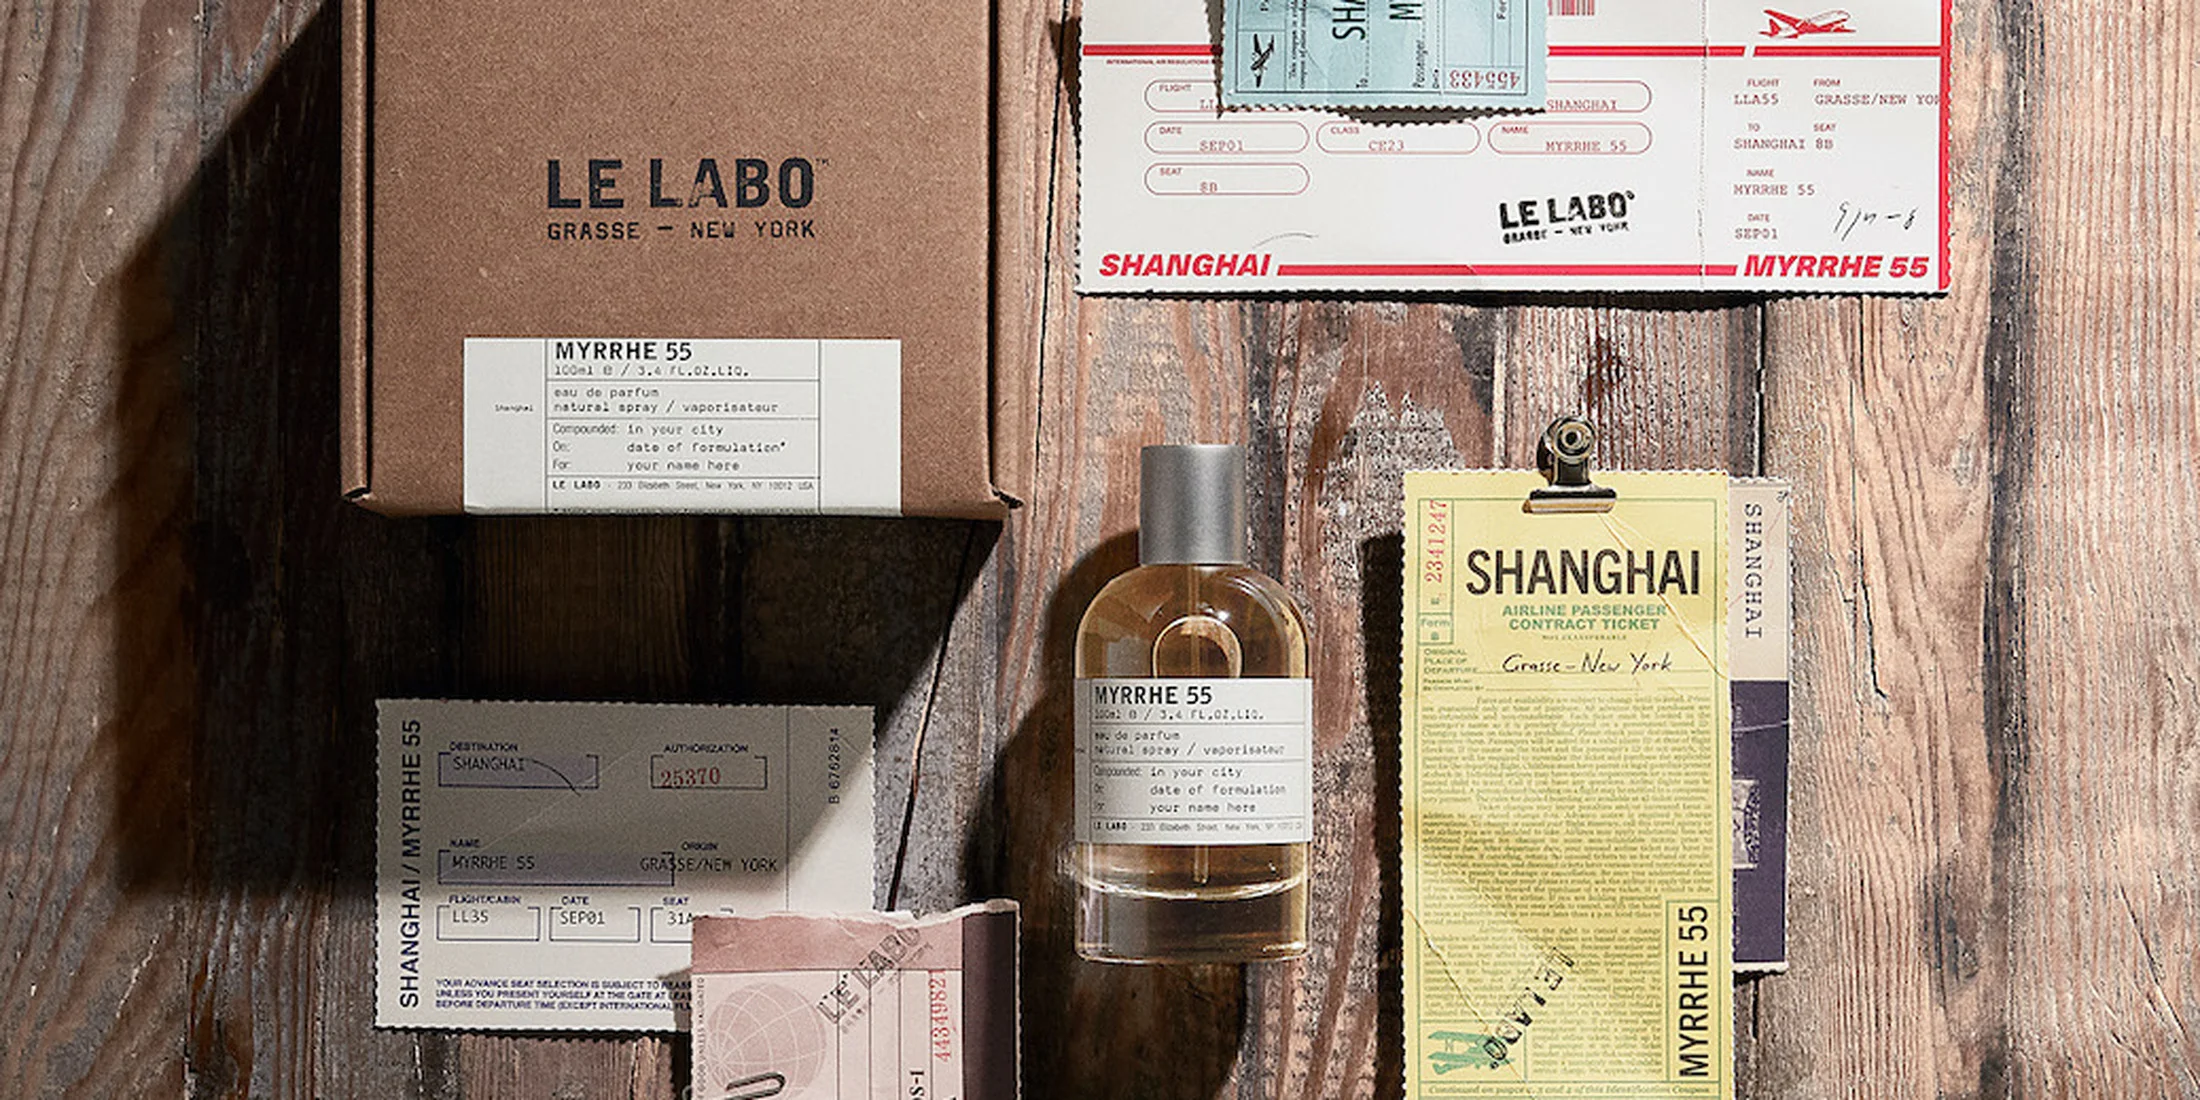 【ル ラボ】都市限定フレグランスから、上海の香り「ミルラ 55」がデビュー。9月限定で日本でも購入可能